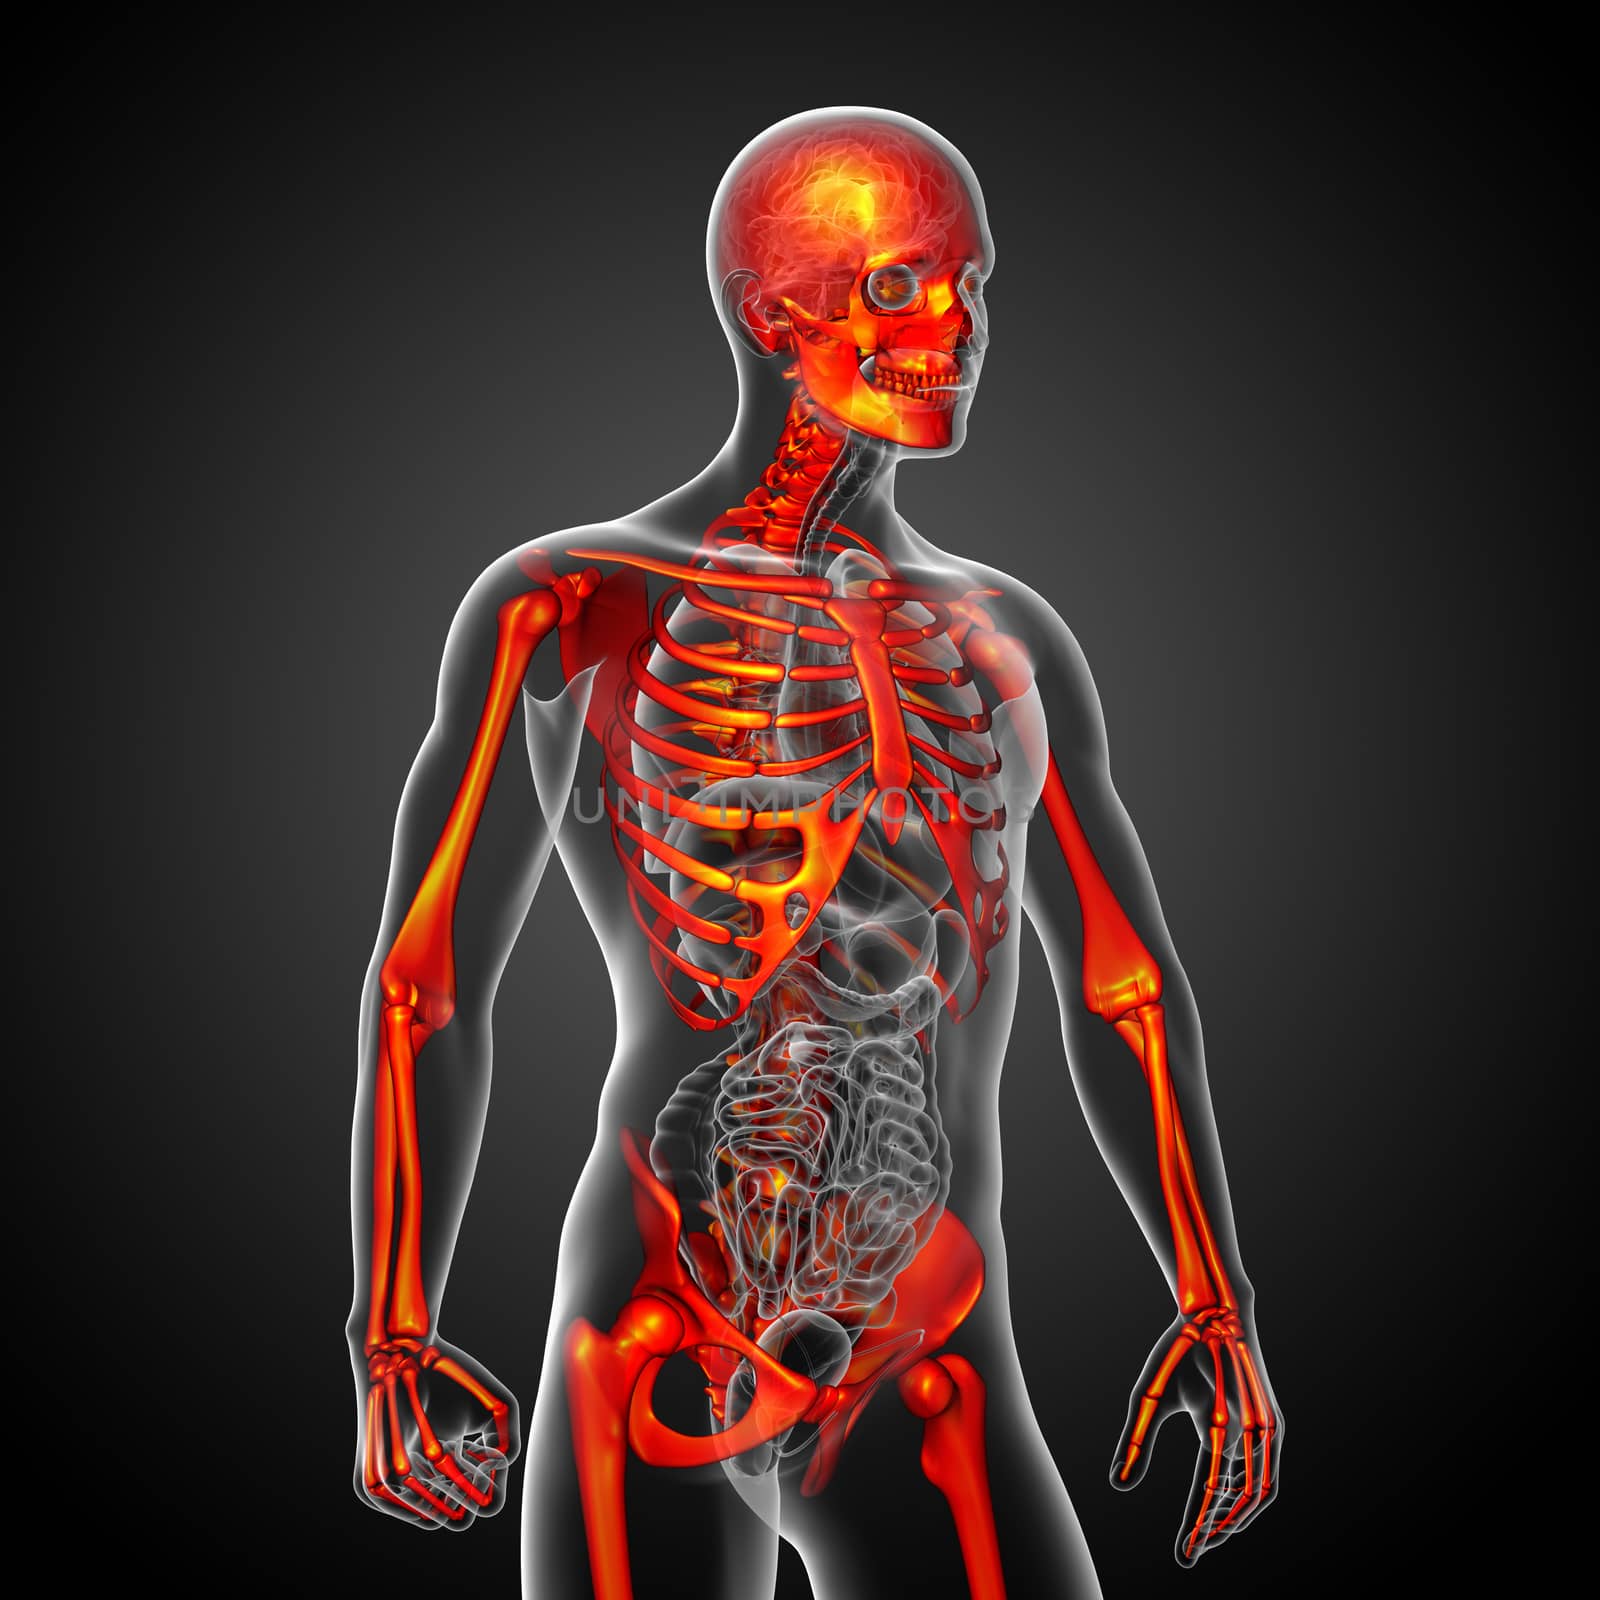 3d render medical illustration of the skeleton bone - side view